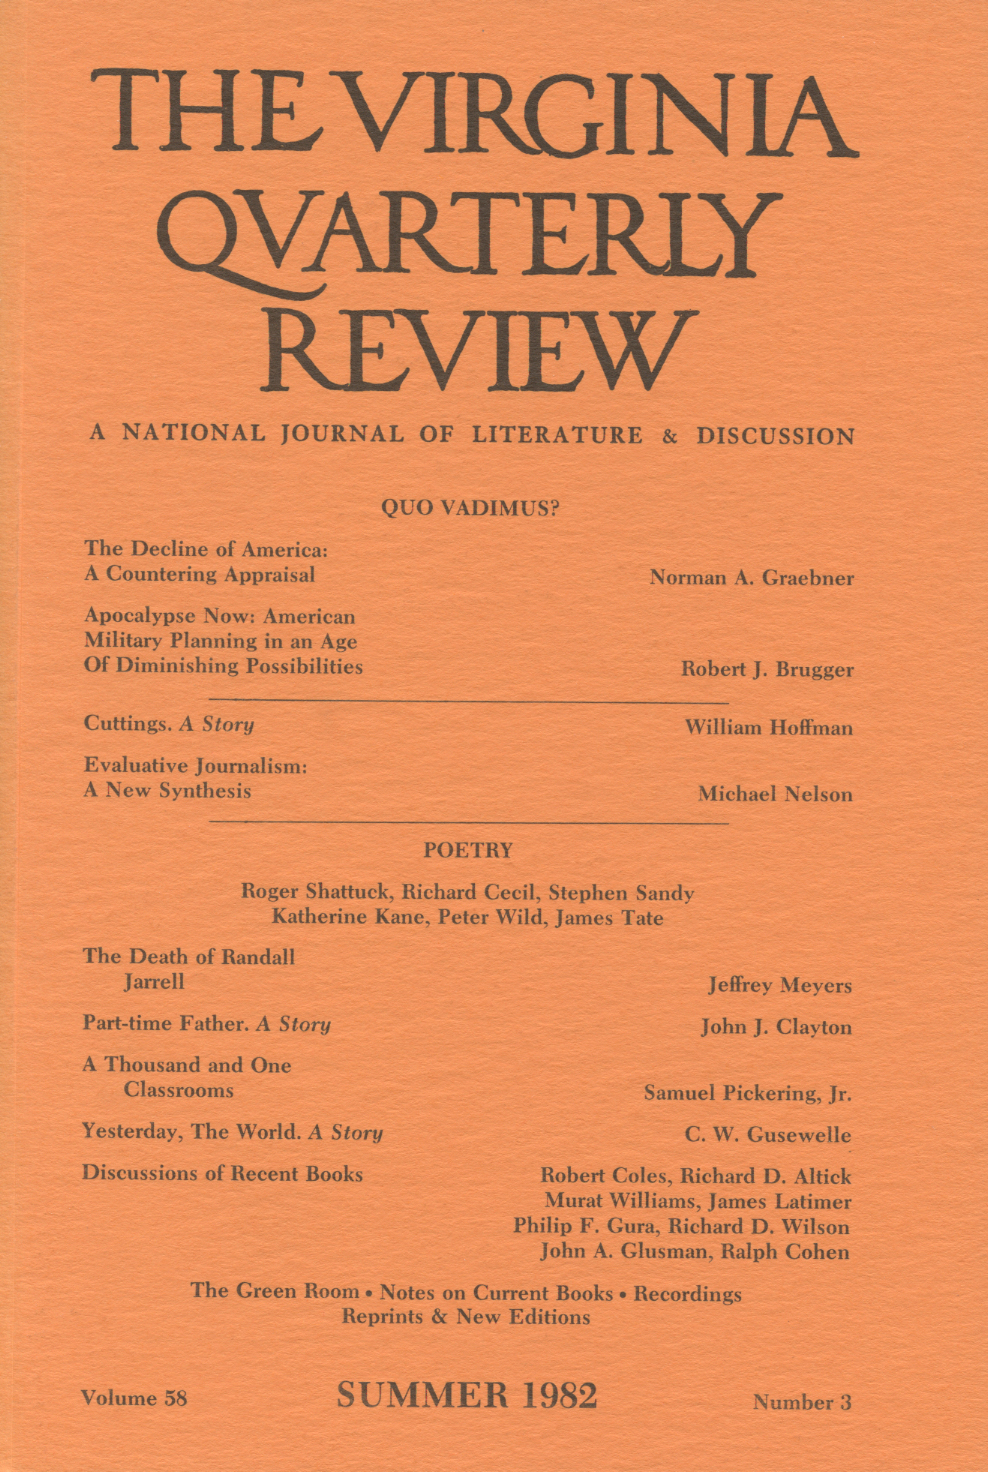 Virginia Quarterly Review, Summer 1982 cover